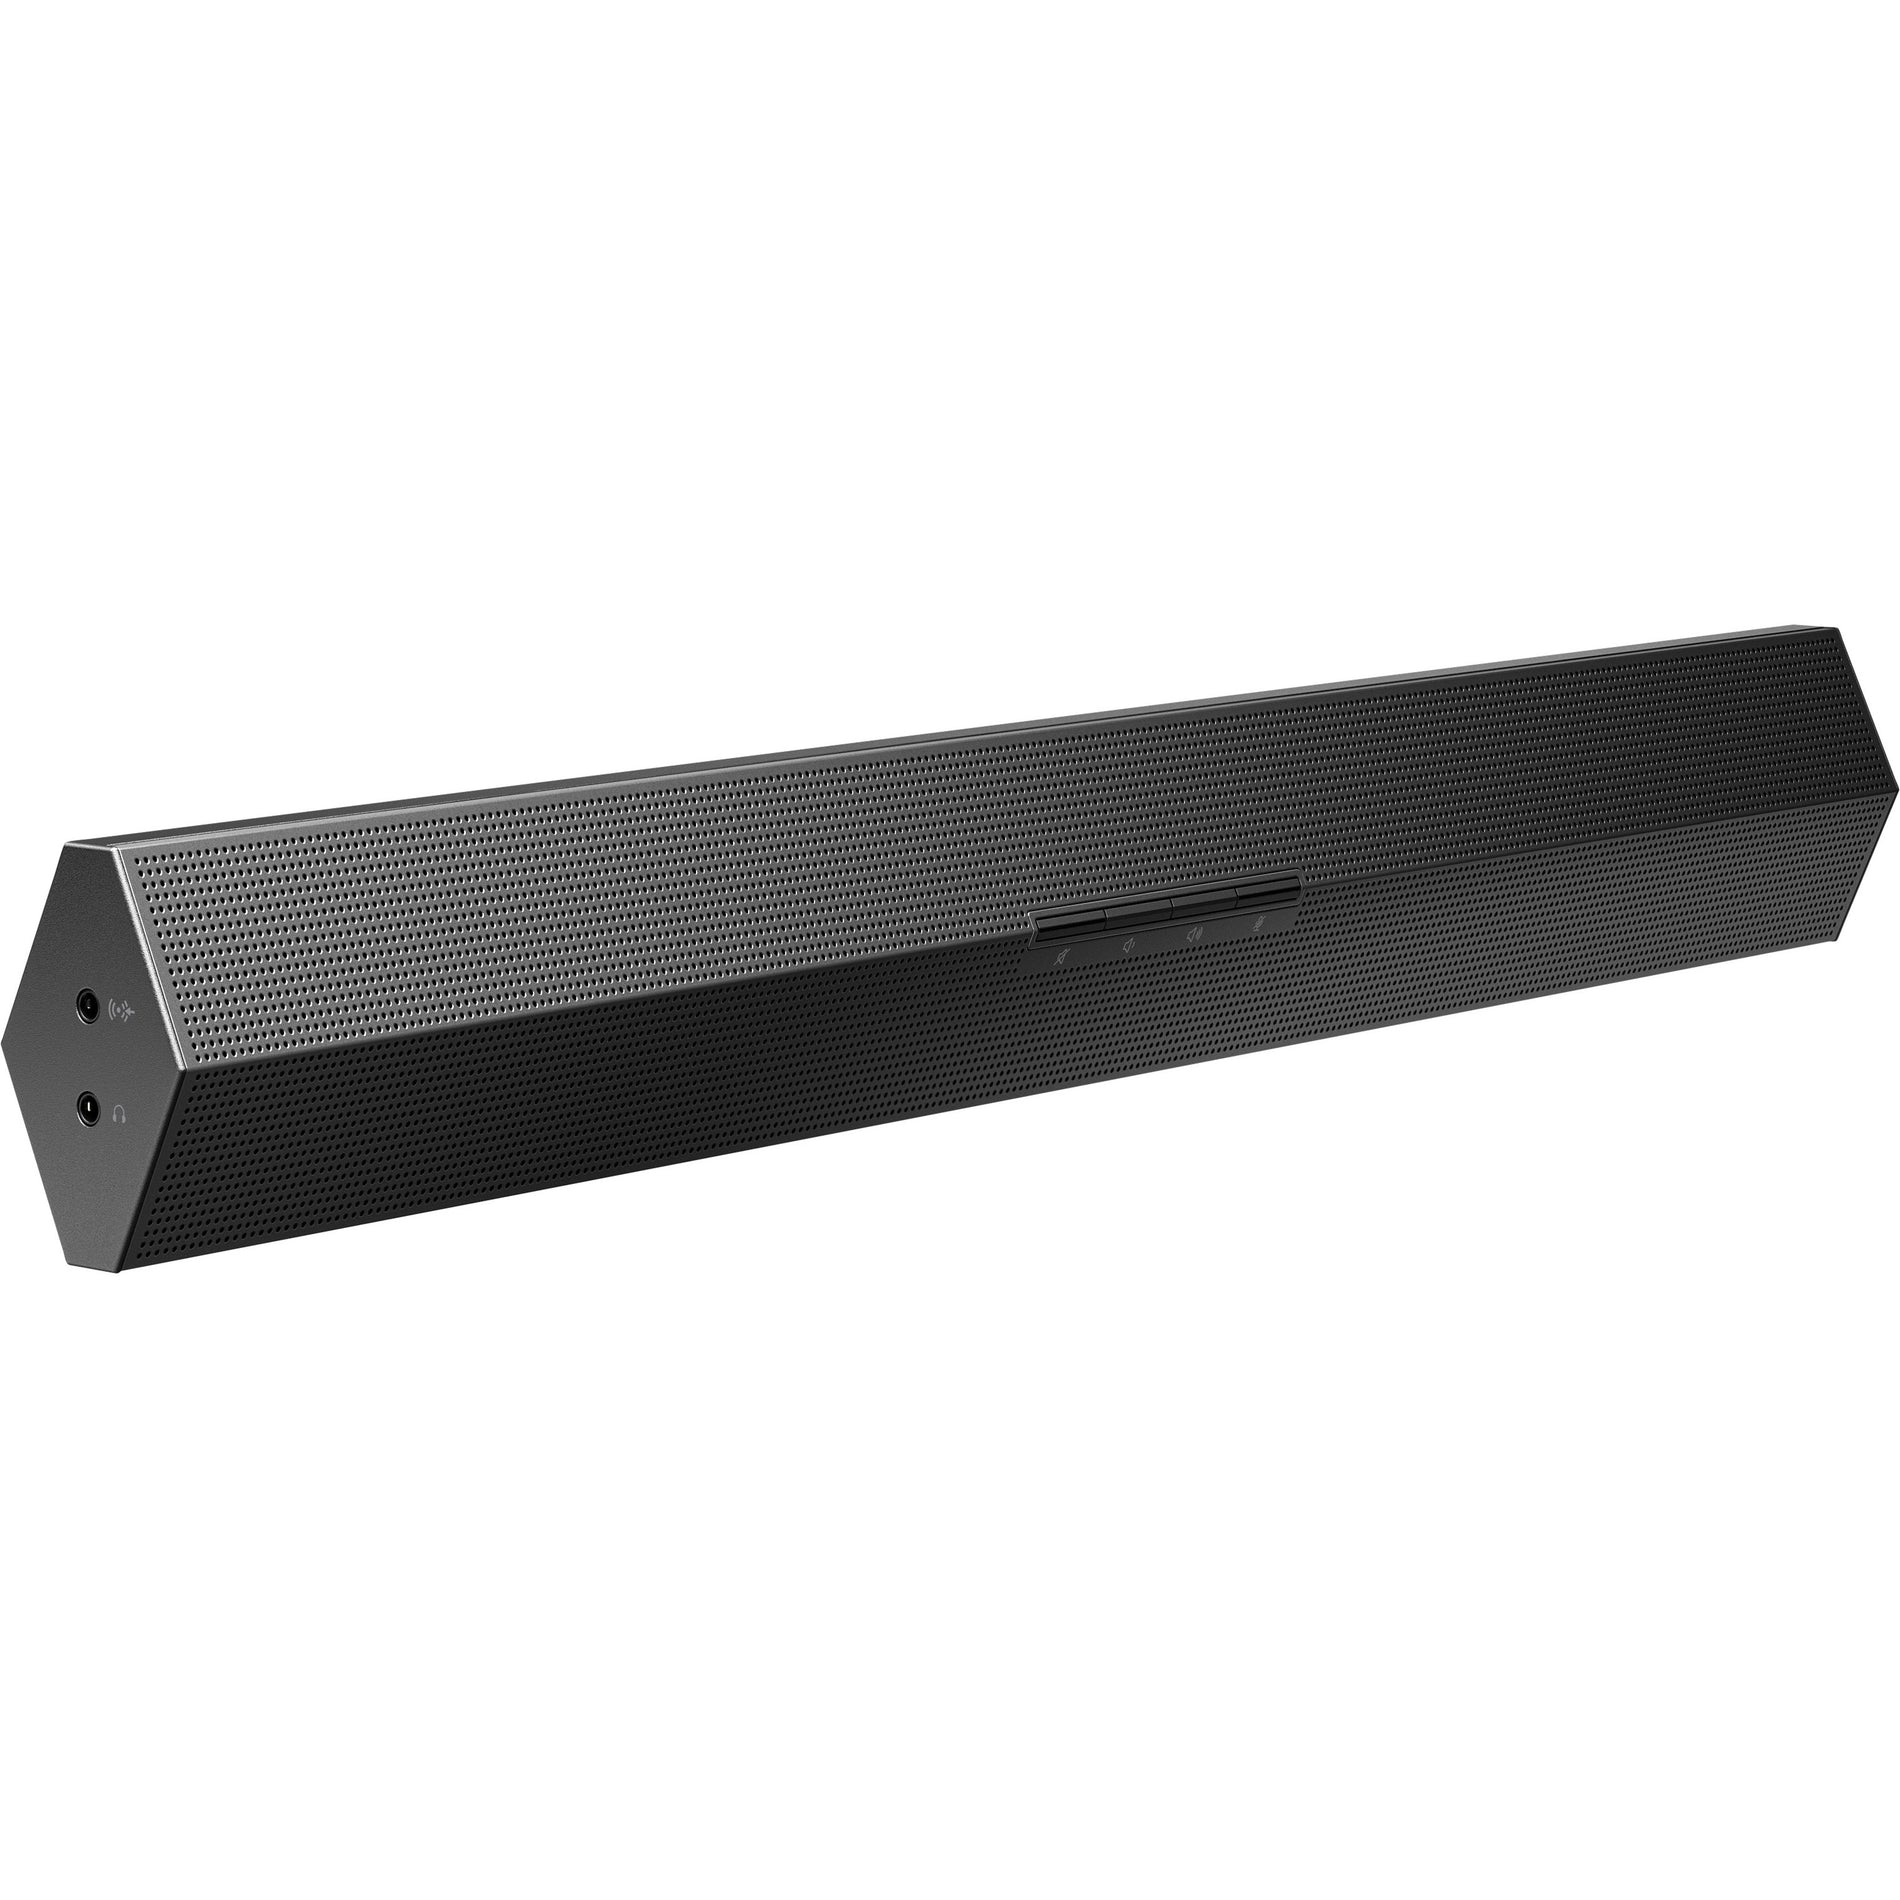 HP 32C42AA Z G3 Conferencing Speaker Bar, USB Sound Bar Speaker - Black, 1 Pack